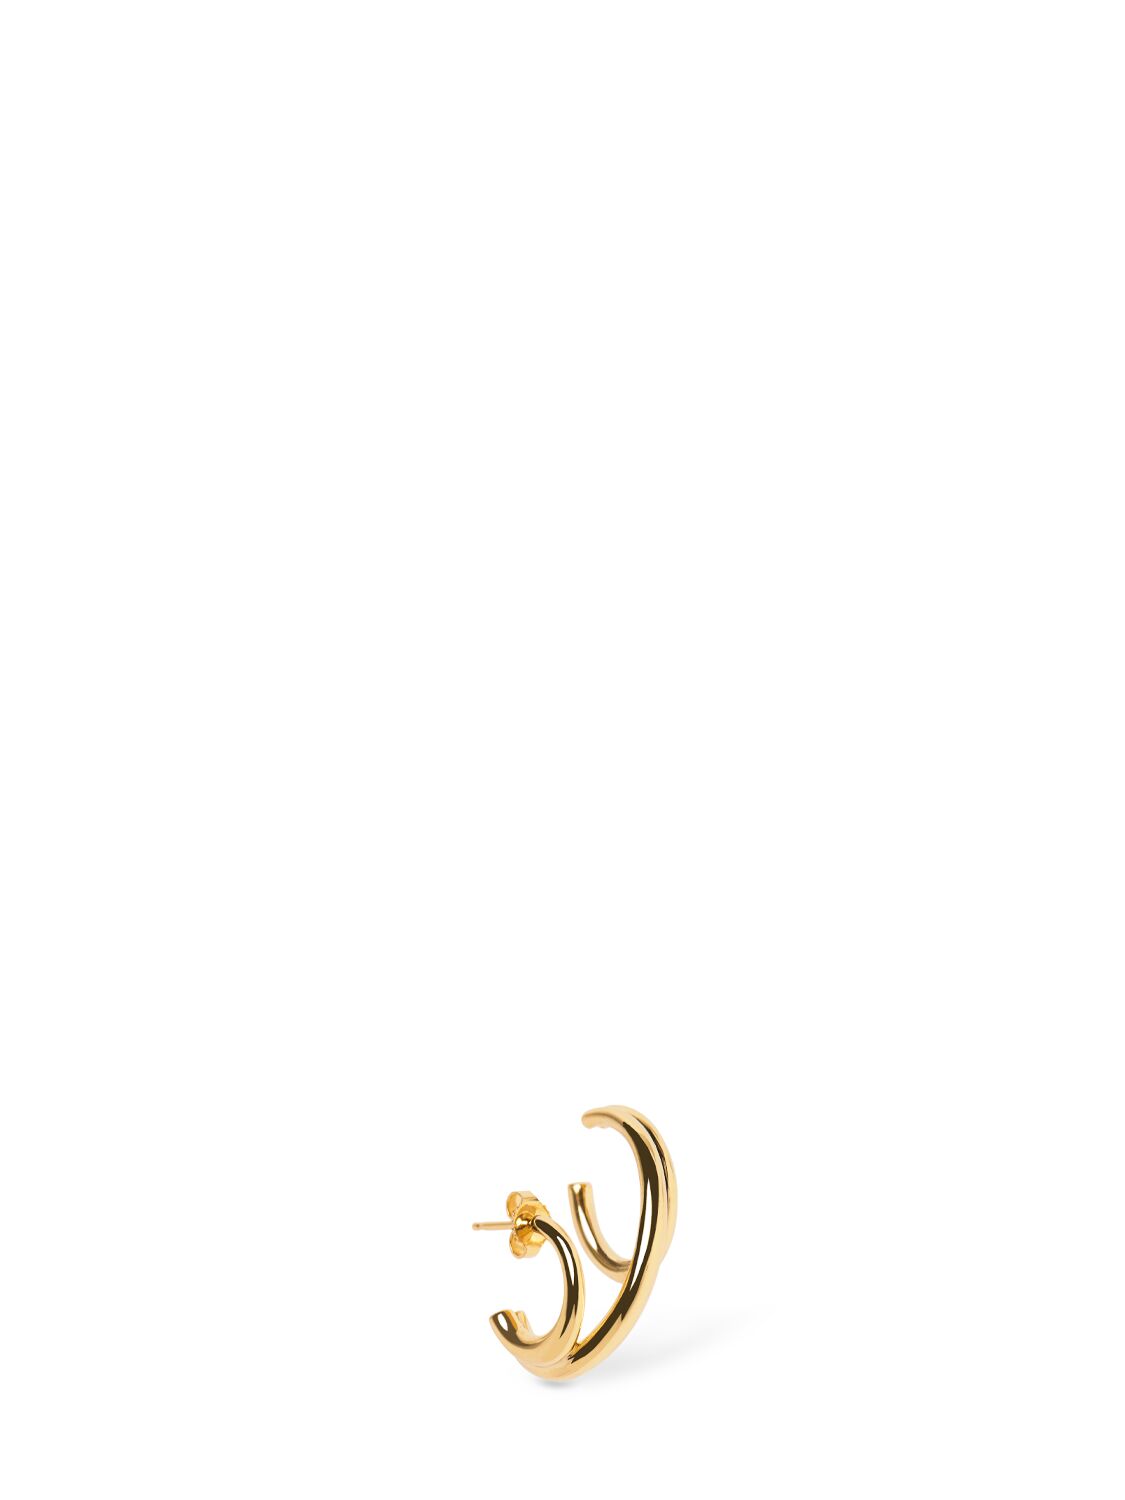 Charlotte Chesnais Triplet Vermeil Mono Earring In Gold